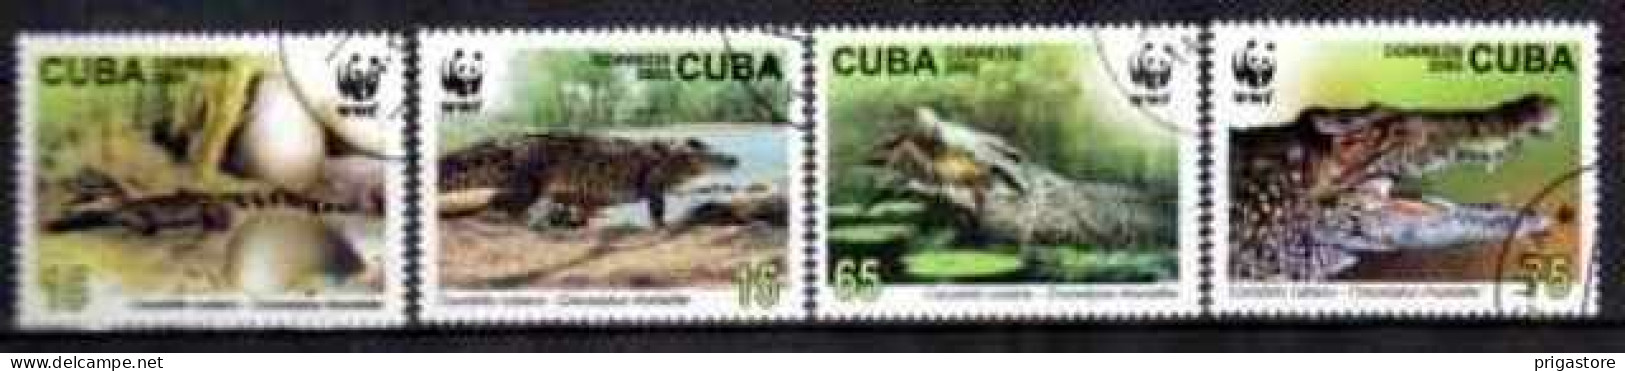 Cuba 2003 Animaux Crocodiles (19) Yvert N° 4117 à 4120 Oblitéré Used - Oblitérés